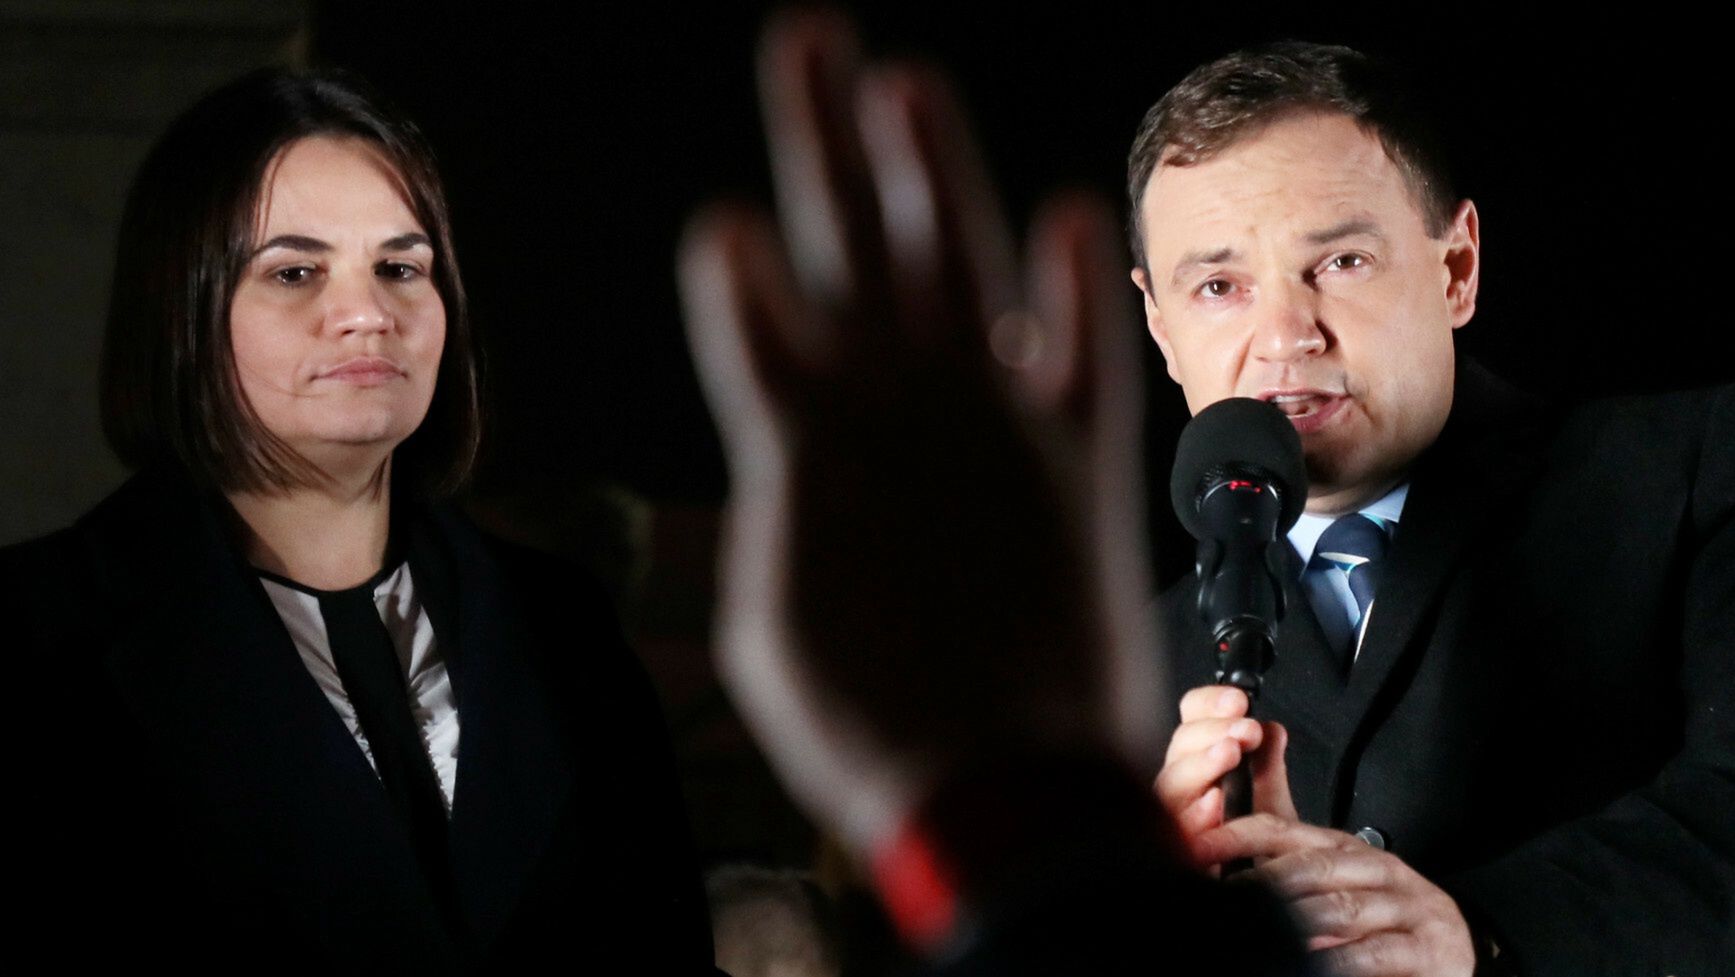 Z lewej Swiatłana Cichanouska - liderka białoruskiej opozycji i kandydatka na fotel prezydenta Białorusi w 2020 roku - przegrała w sfałszowanych przez Alaksandra Łukaszenkę wyborach. Z prawej Aleś Zarembiuk